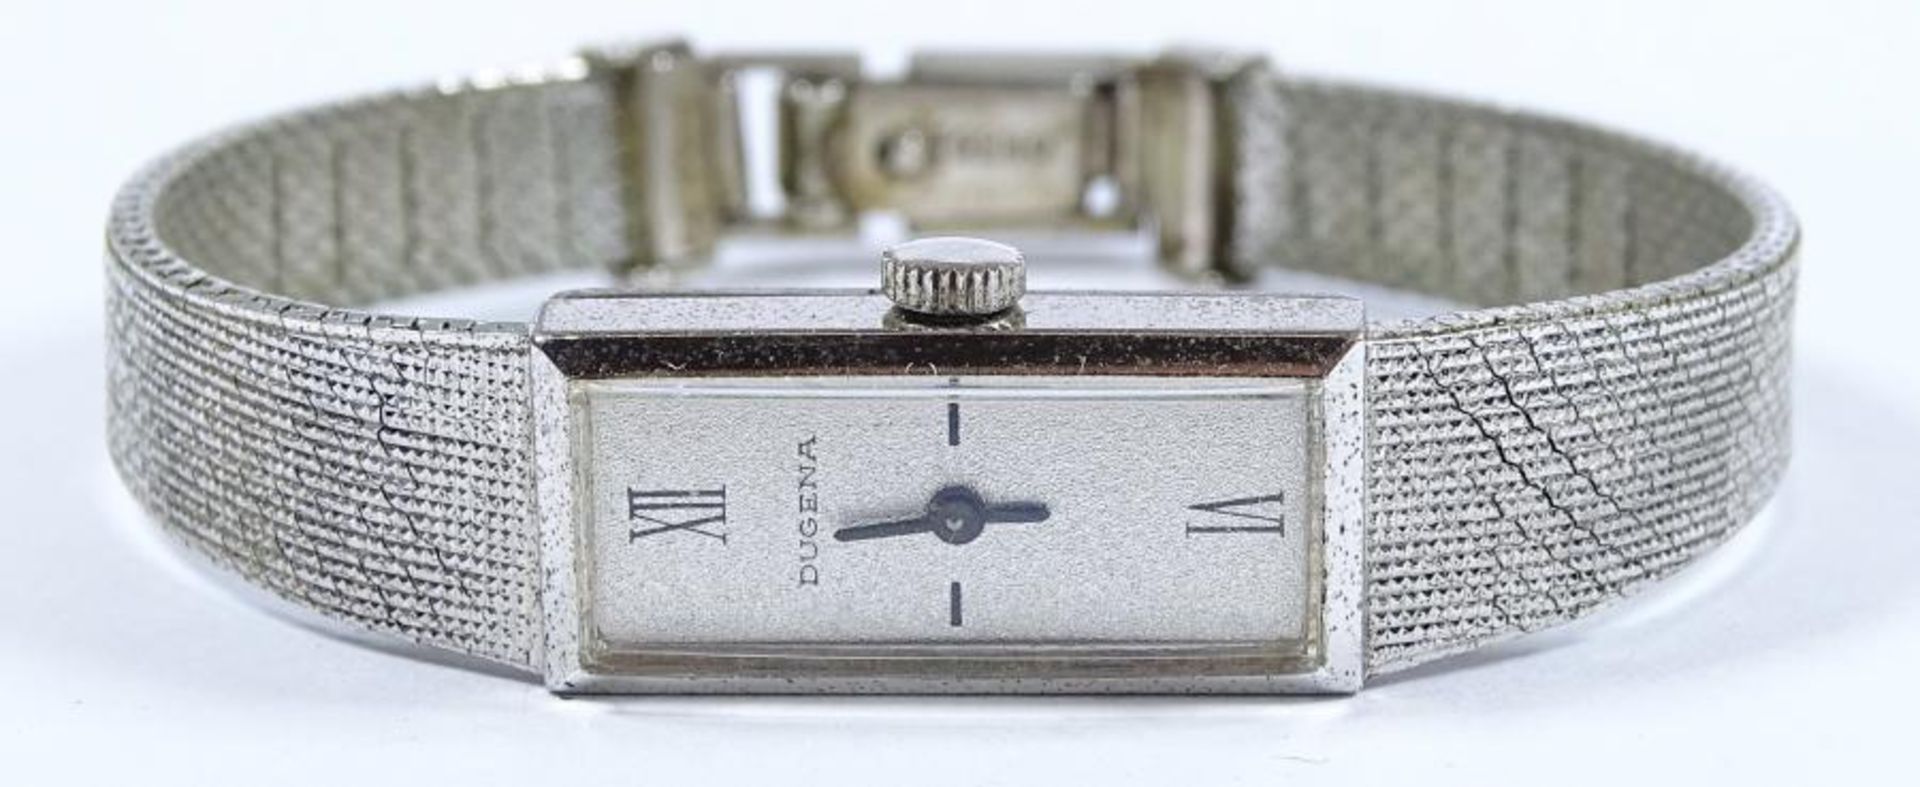 Damen Armbanduhr "Dugena",Handaufzug,Werk läuft,Deckel und Band Silber -835- , ges.gew. 23gr.Gehäuse